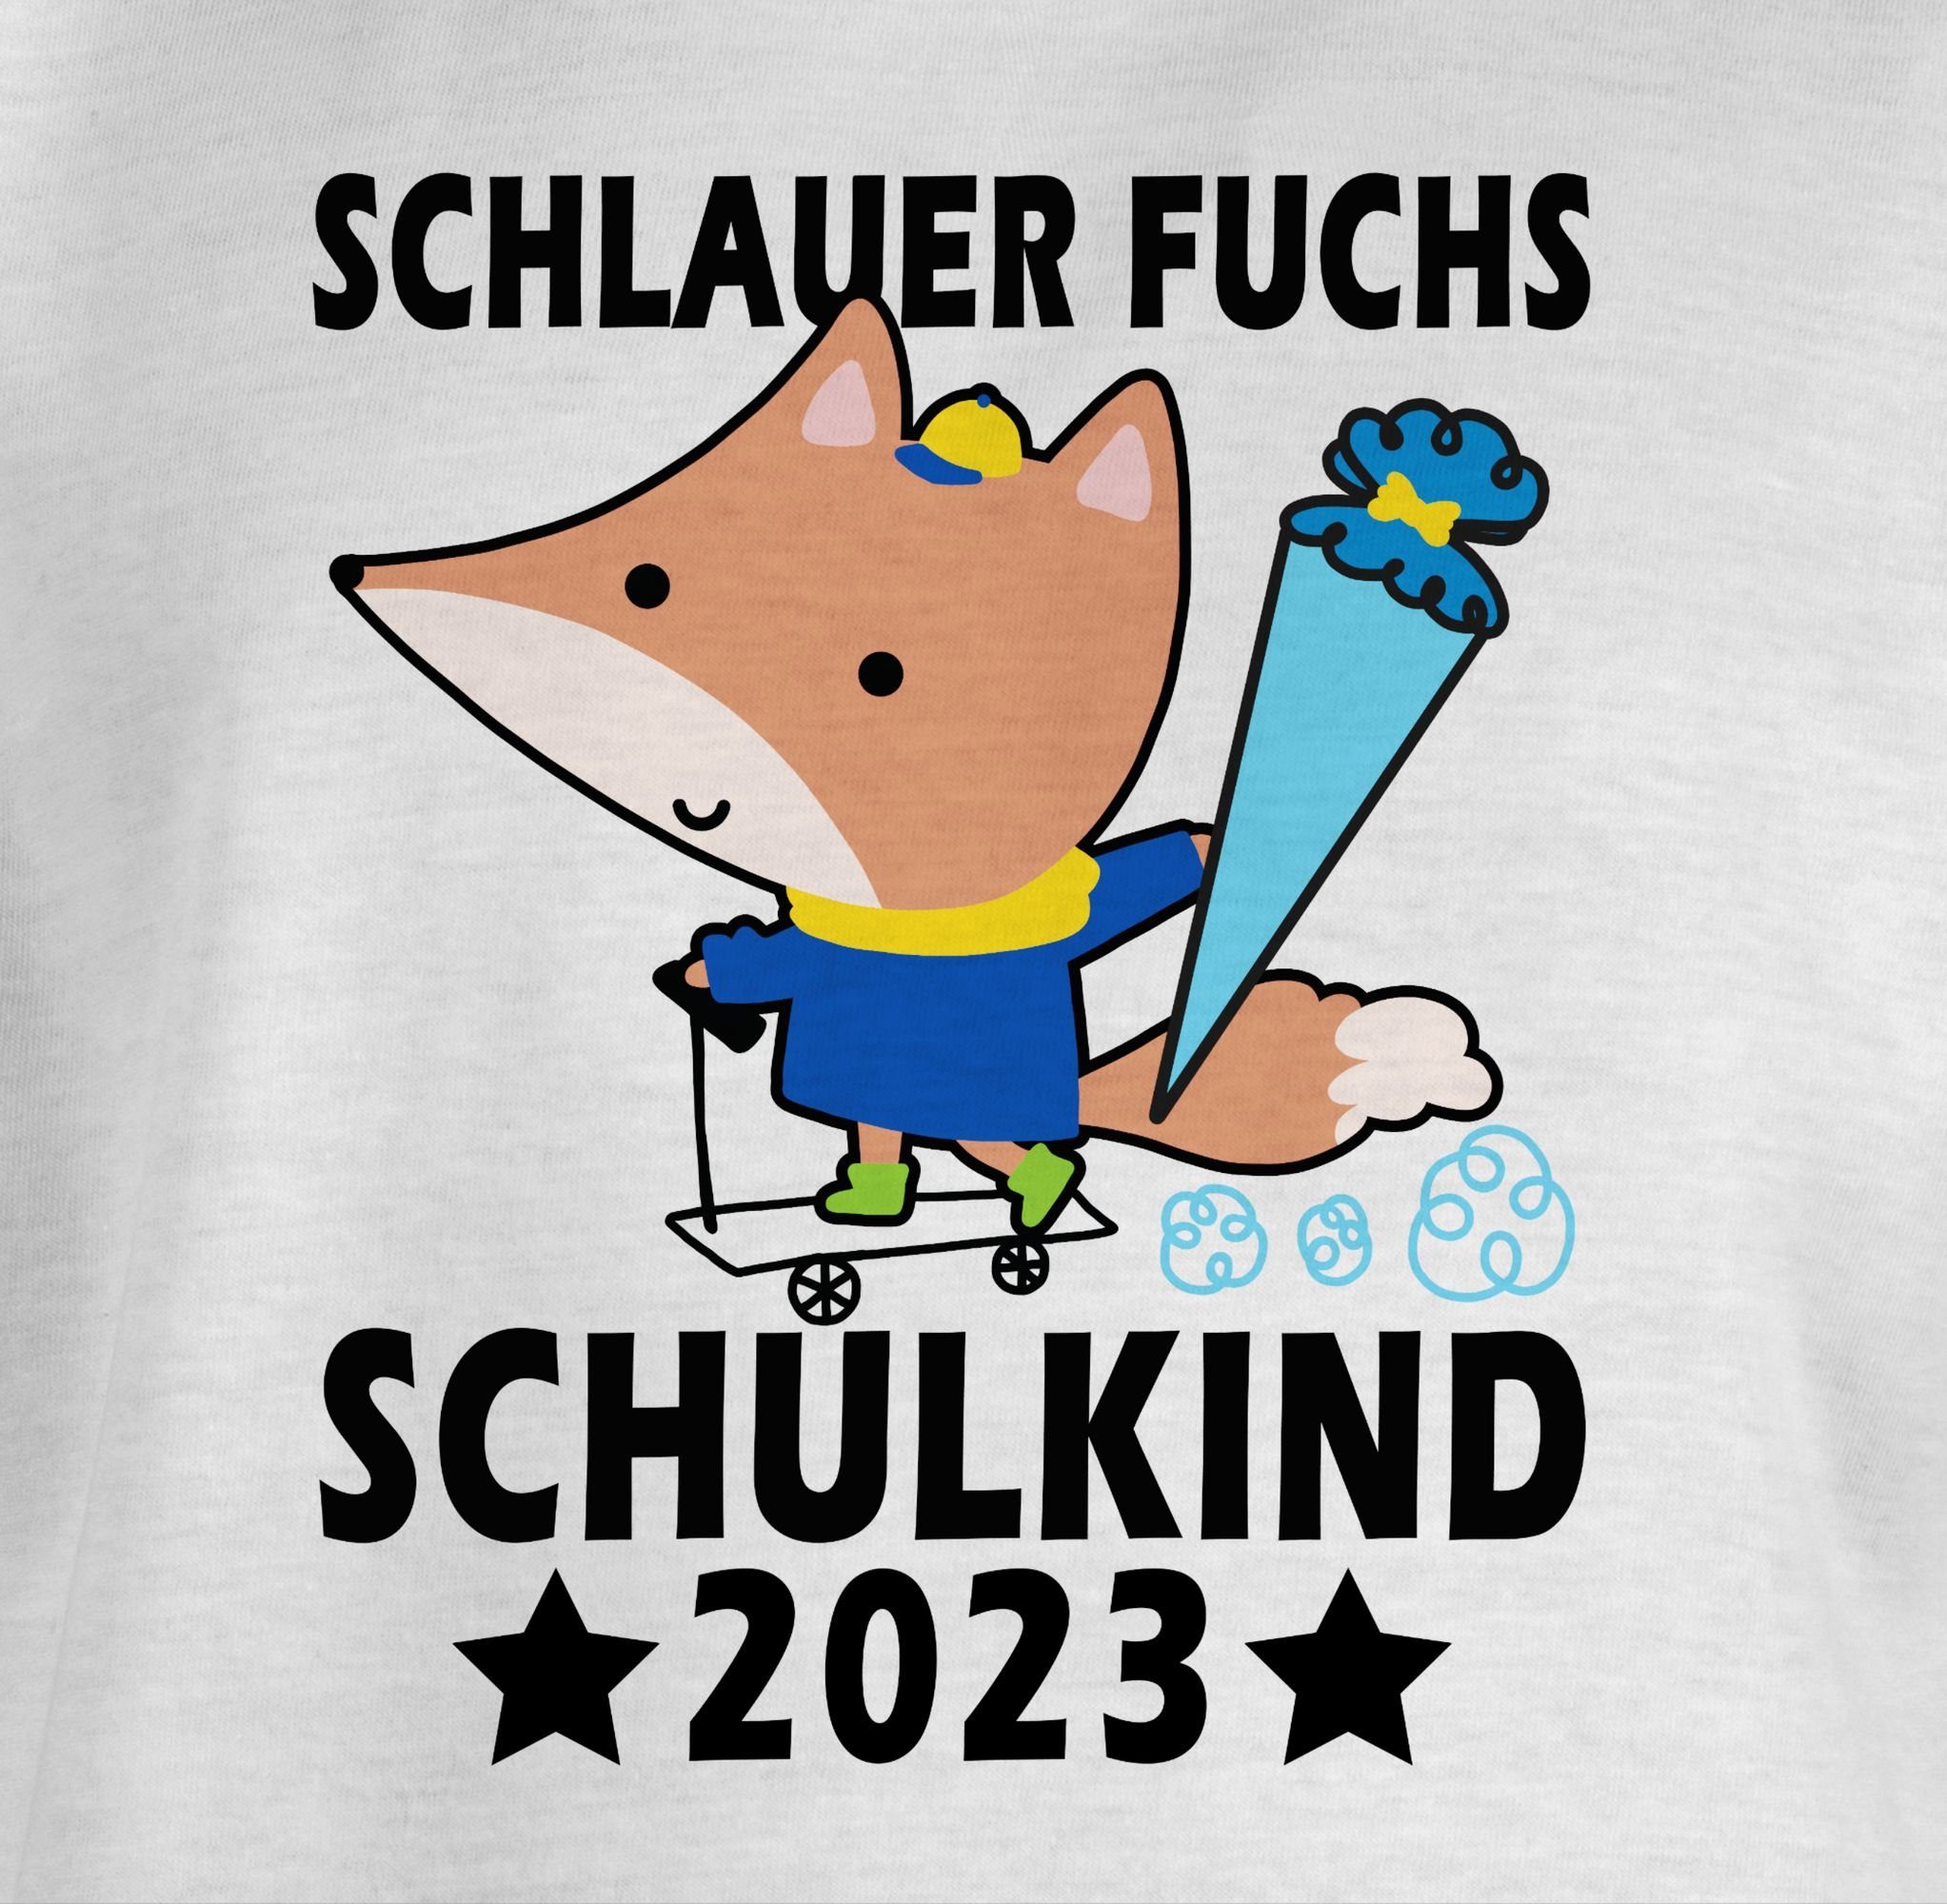 Shirtracer T-Shirt Schlauer Fuchs Schulkind schwarz Mädchen - 3 2023 Einschulung Weiß